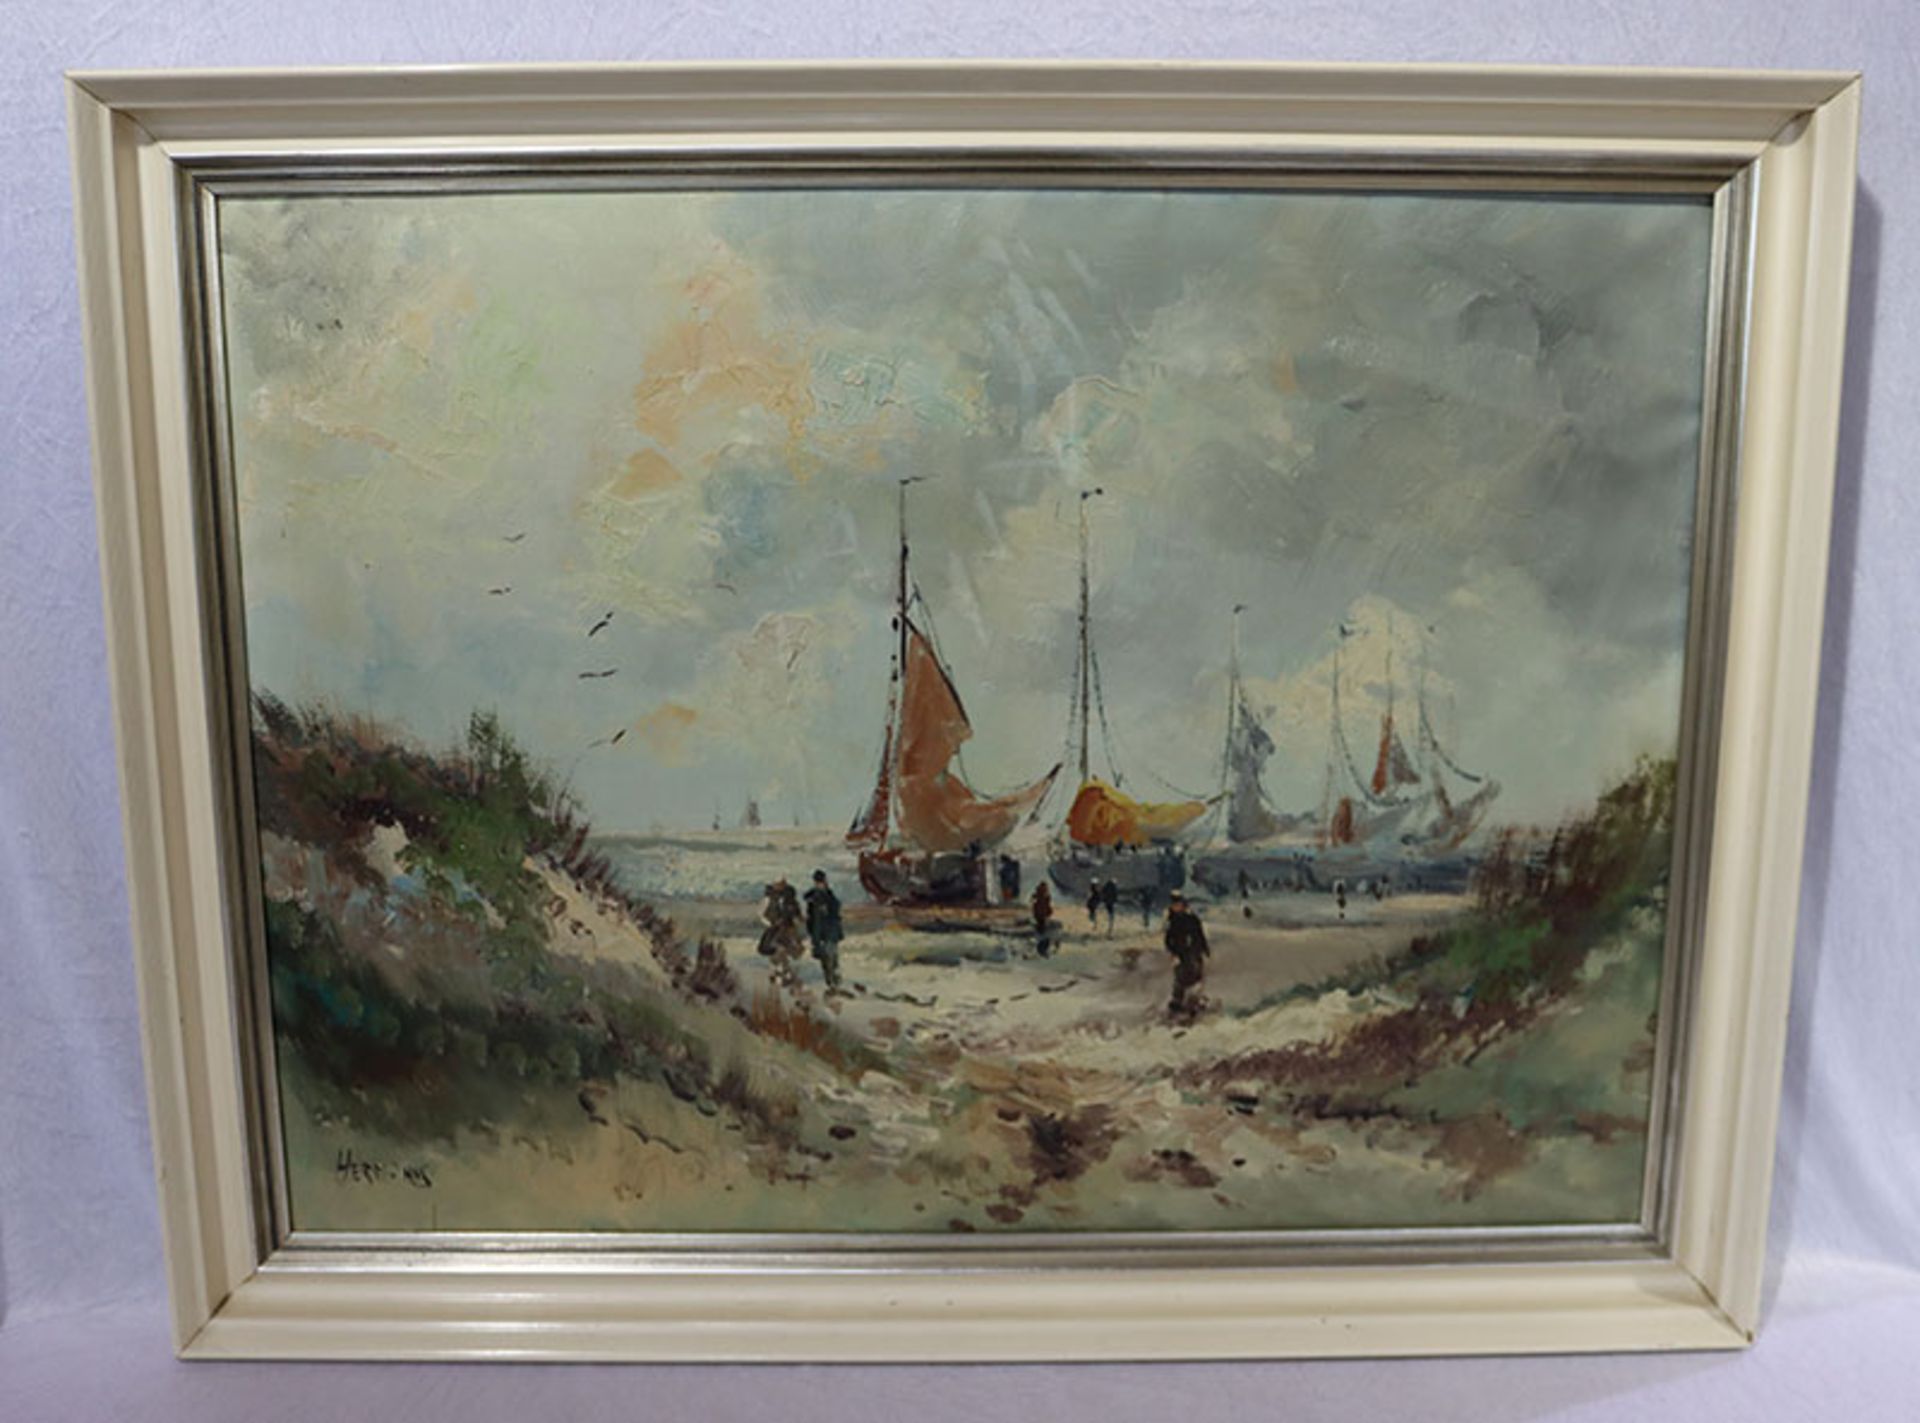 Gemälde ÖL/LW 'Holländische Küsten-Szenerie mit Segelbooten', signiert Hermanns, ev. Heinrich ?,